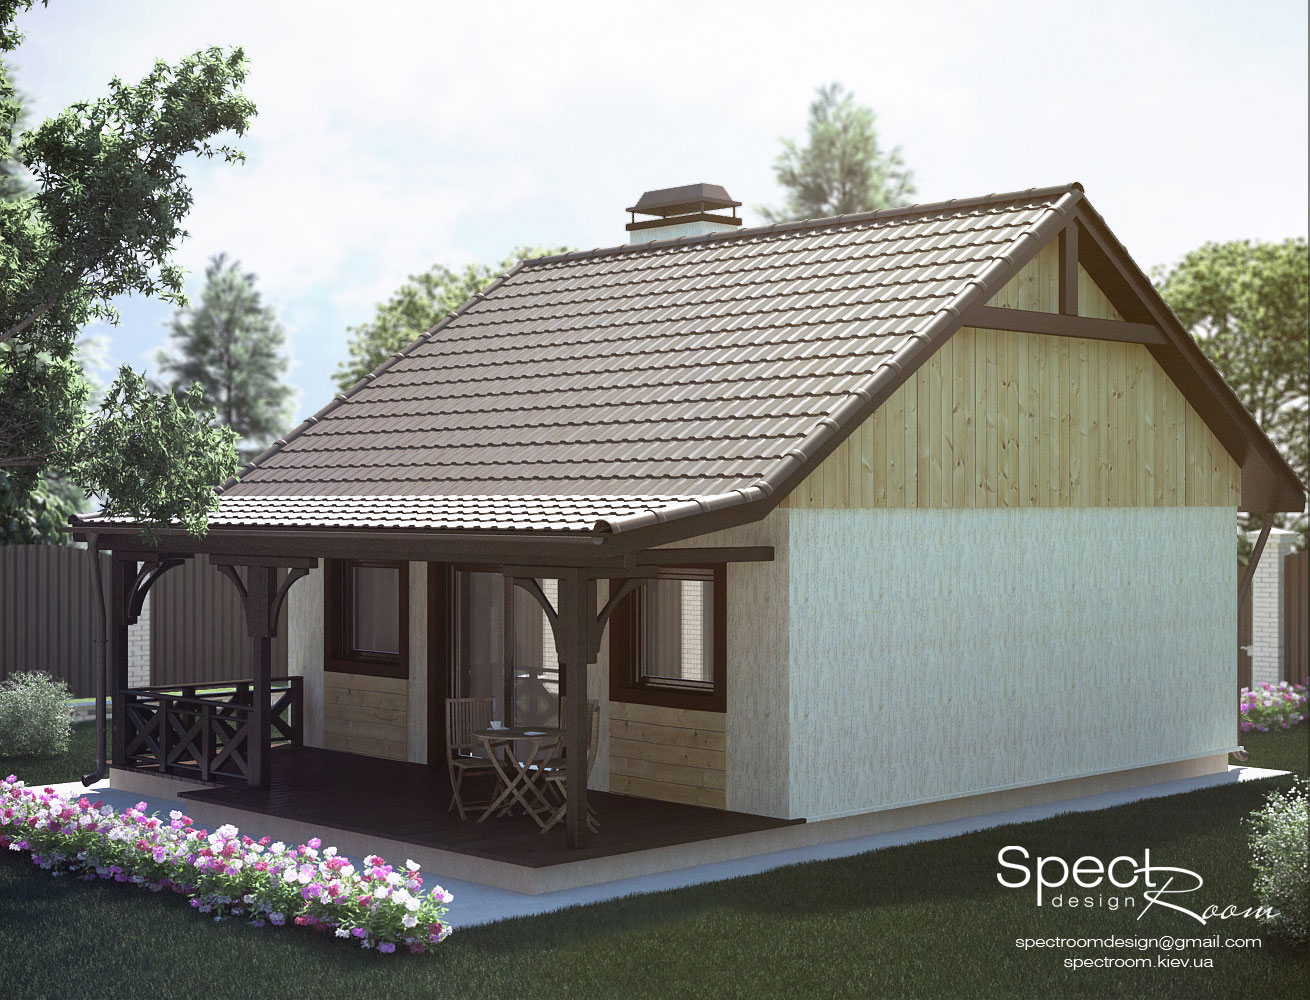 Візуалізація дачного будиночка  - Spectroom